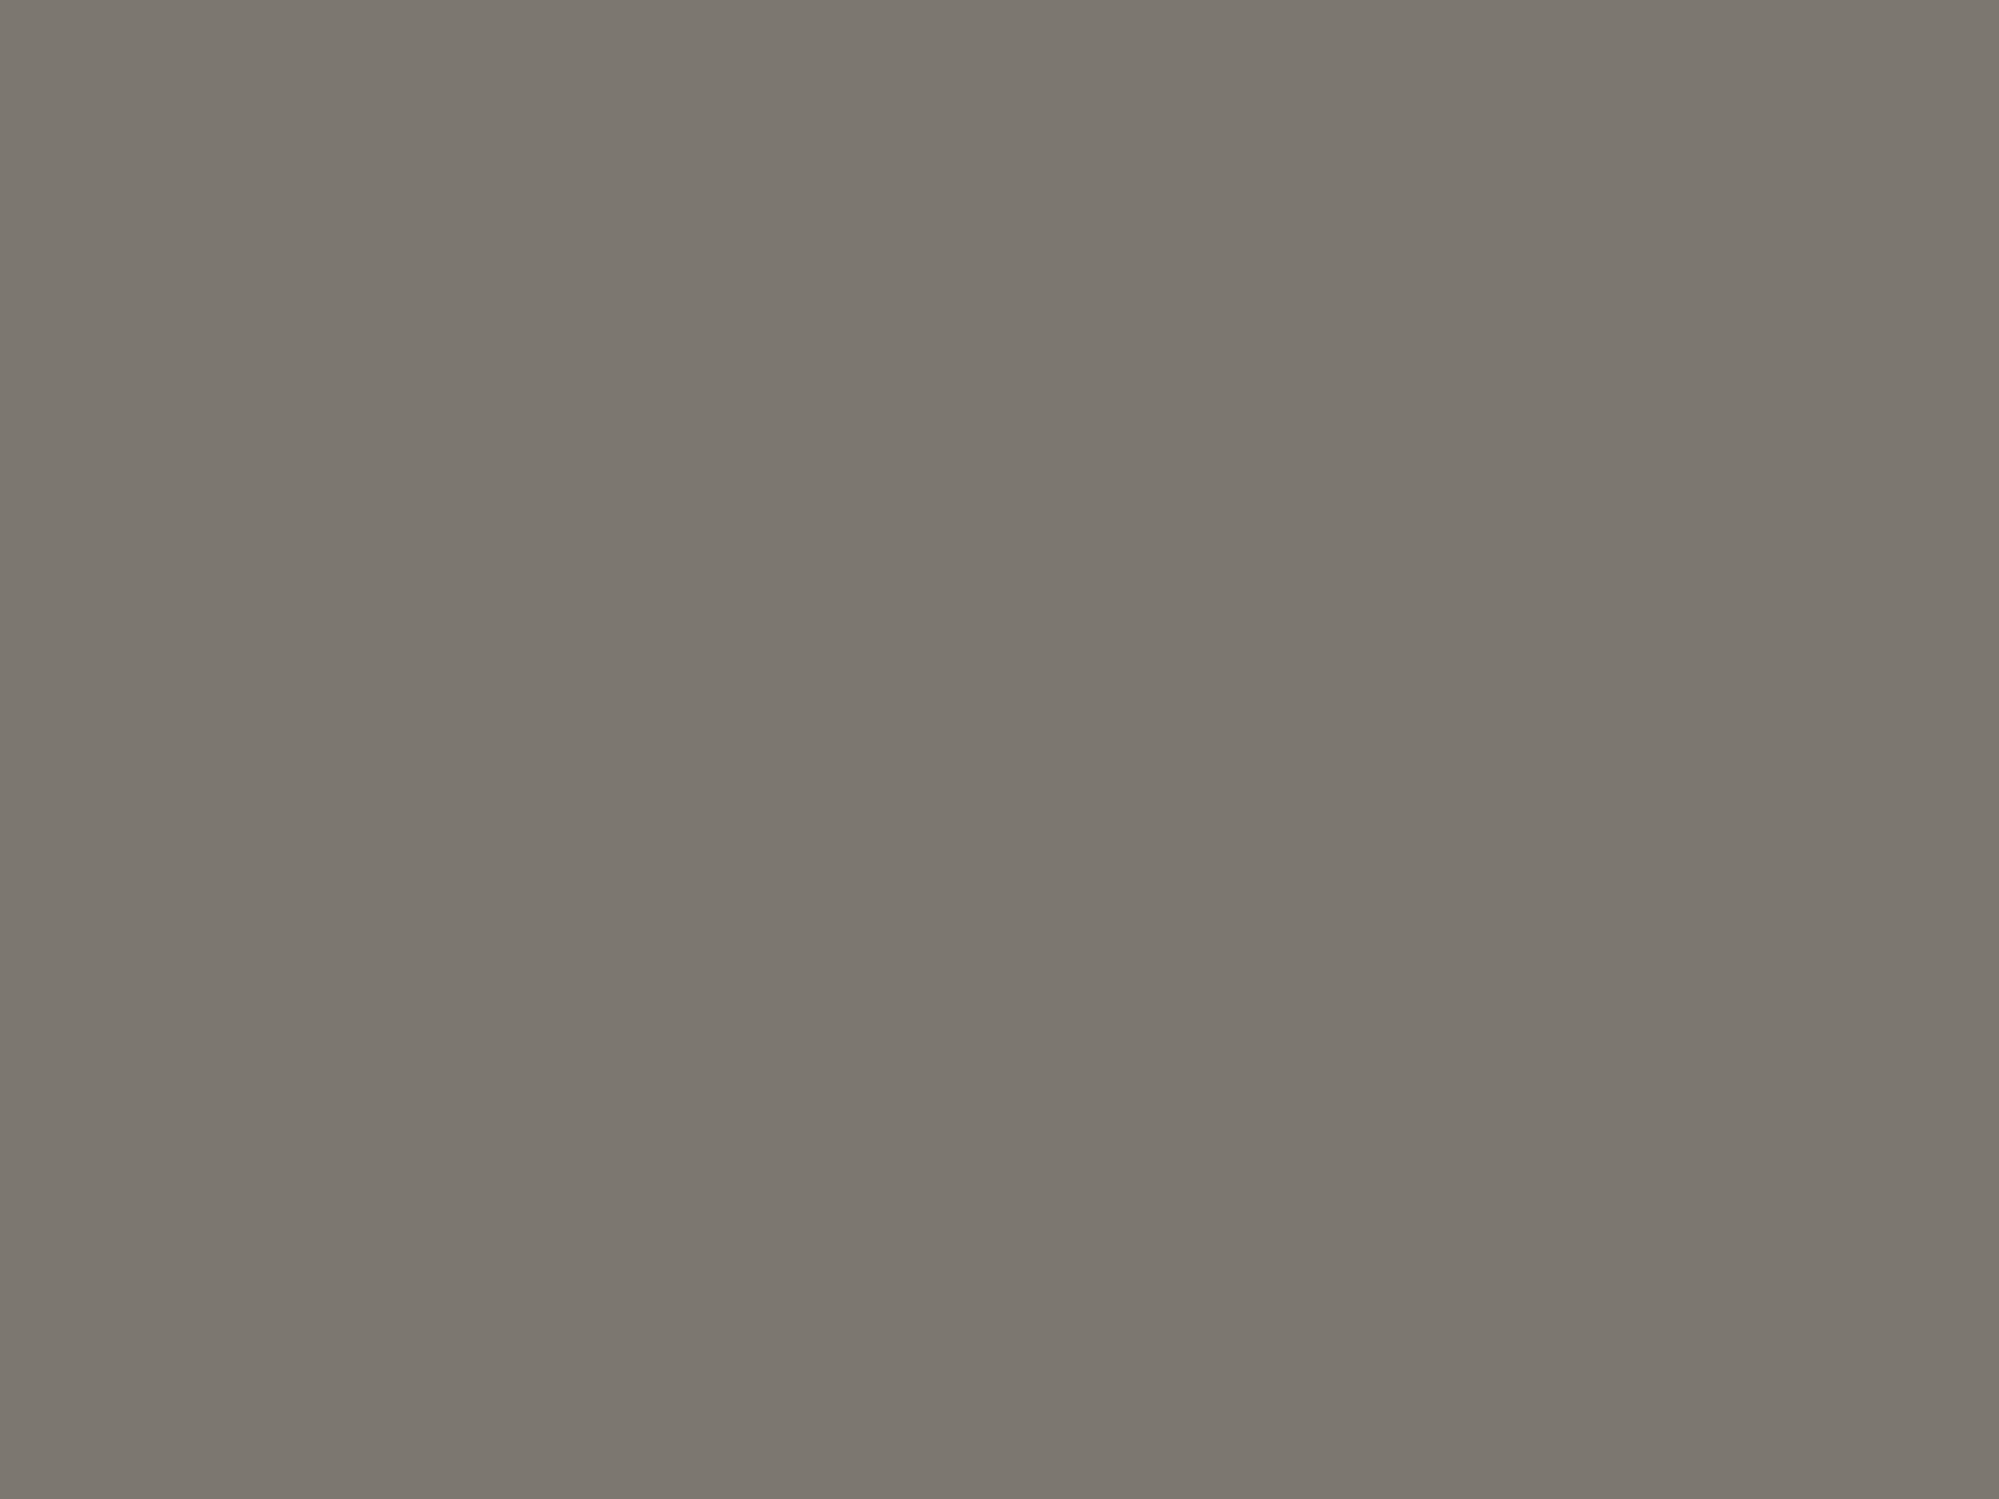 Василий Кандинский. Импровизация (фрагмент). 1913. Государственный музей изобразительных искусств Республики Татарстан, Казань, Республика Татарстан